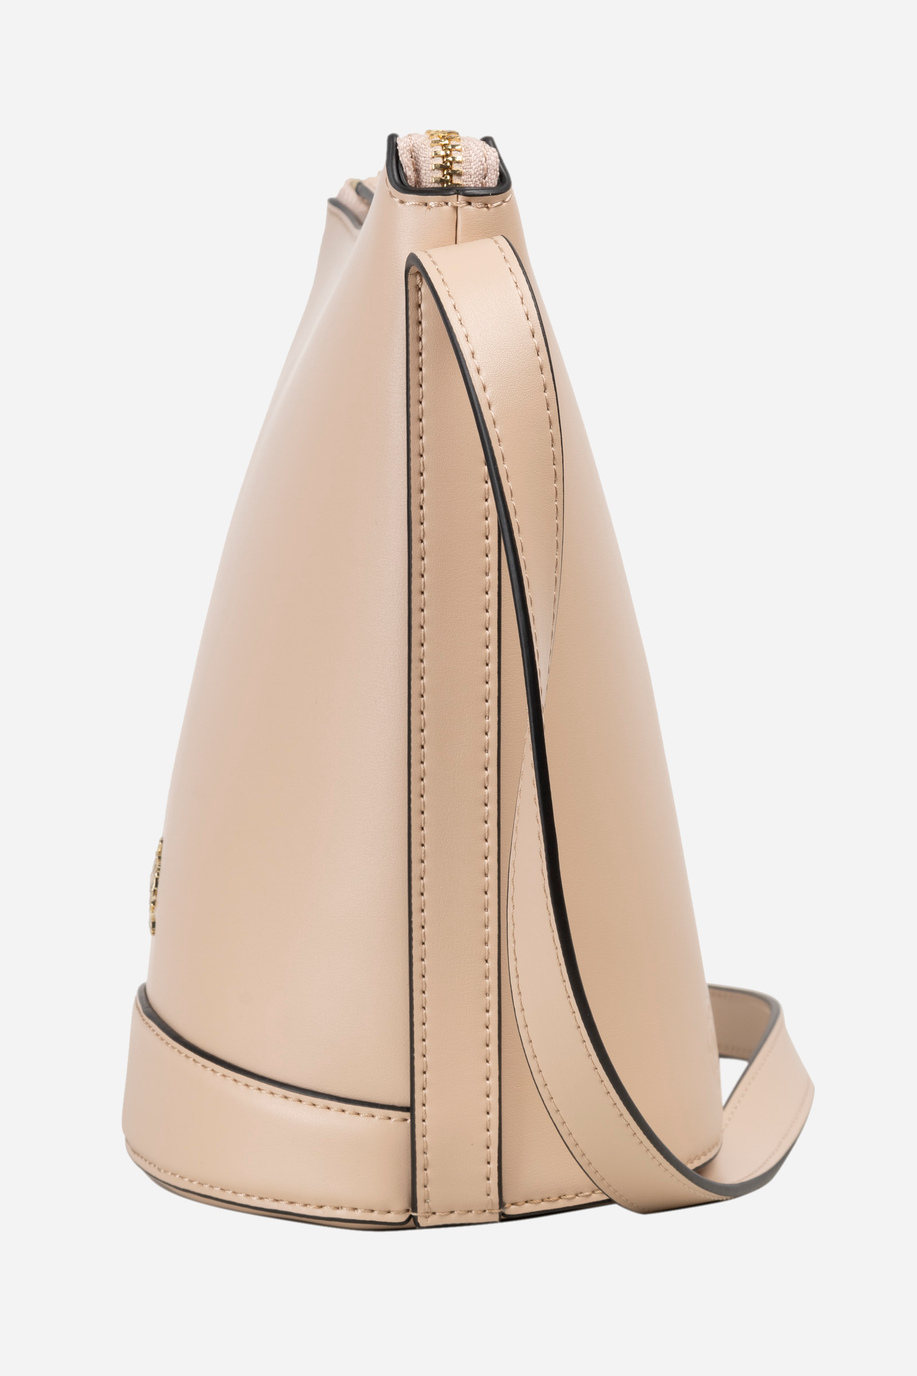 Leather shoulder bag - Heritage - Bags | La Martina - Official Online Shop